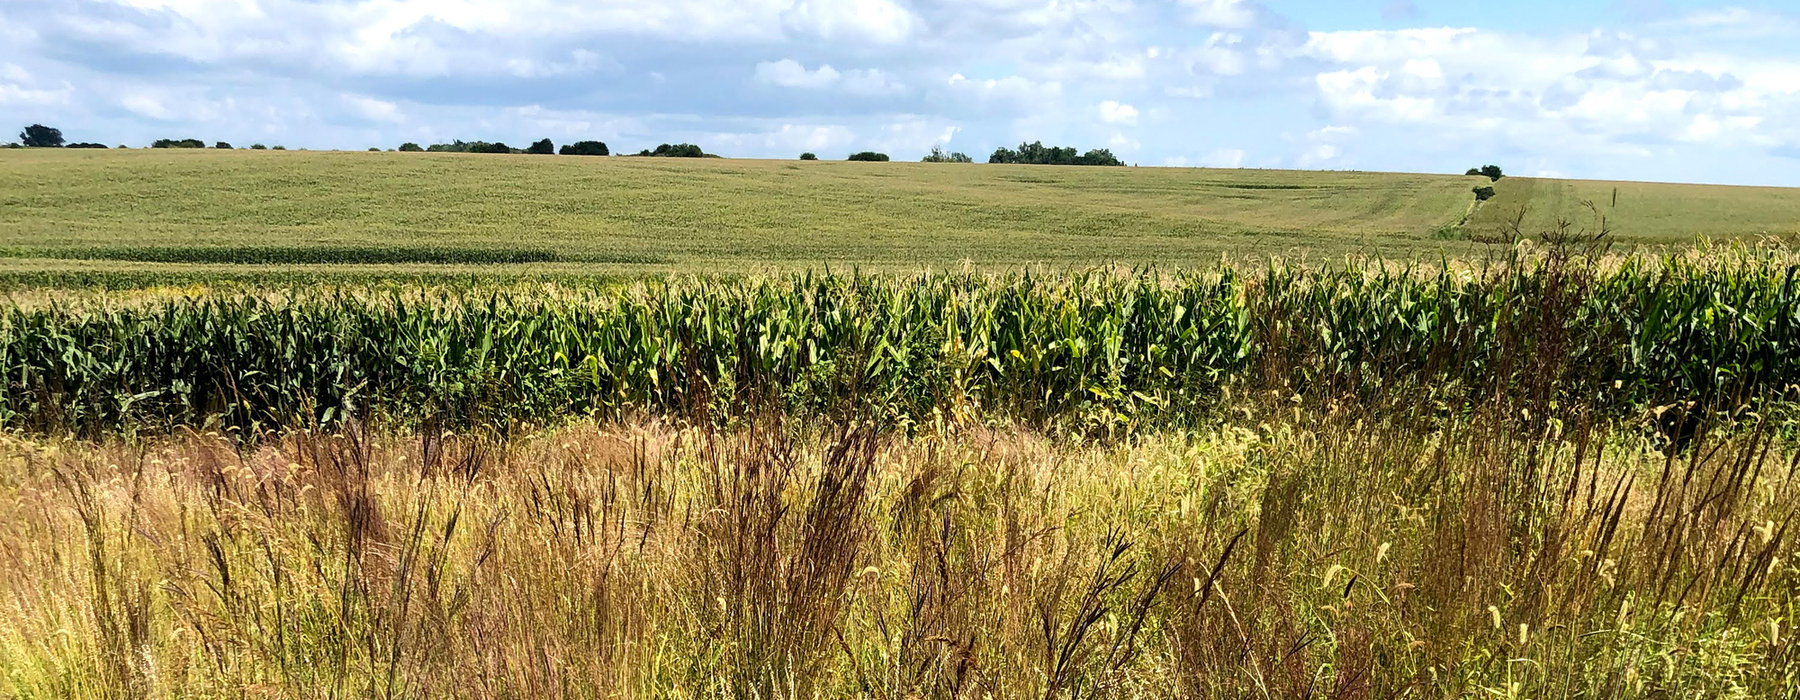 Imagen de paisaje de campo de maíz verde y cielos azules con nubes blancas hinchadas